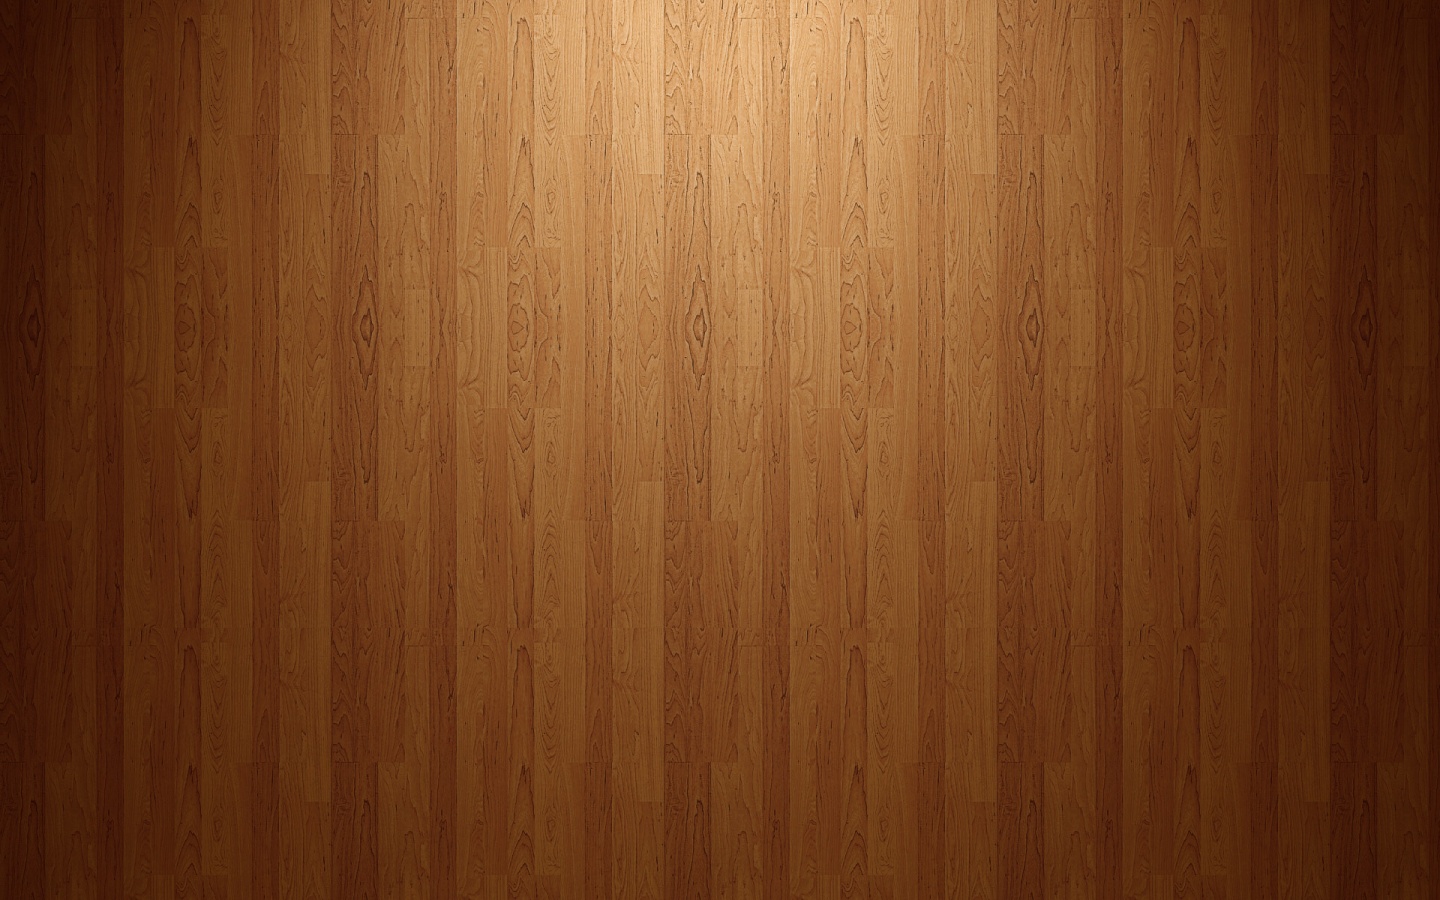 Wood Floor Desktop Pc And Mac Wallpaper